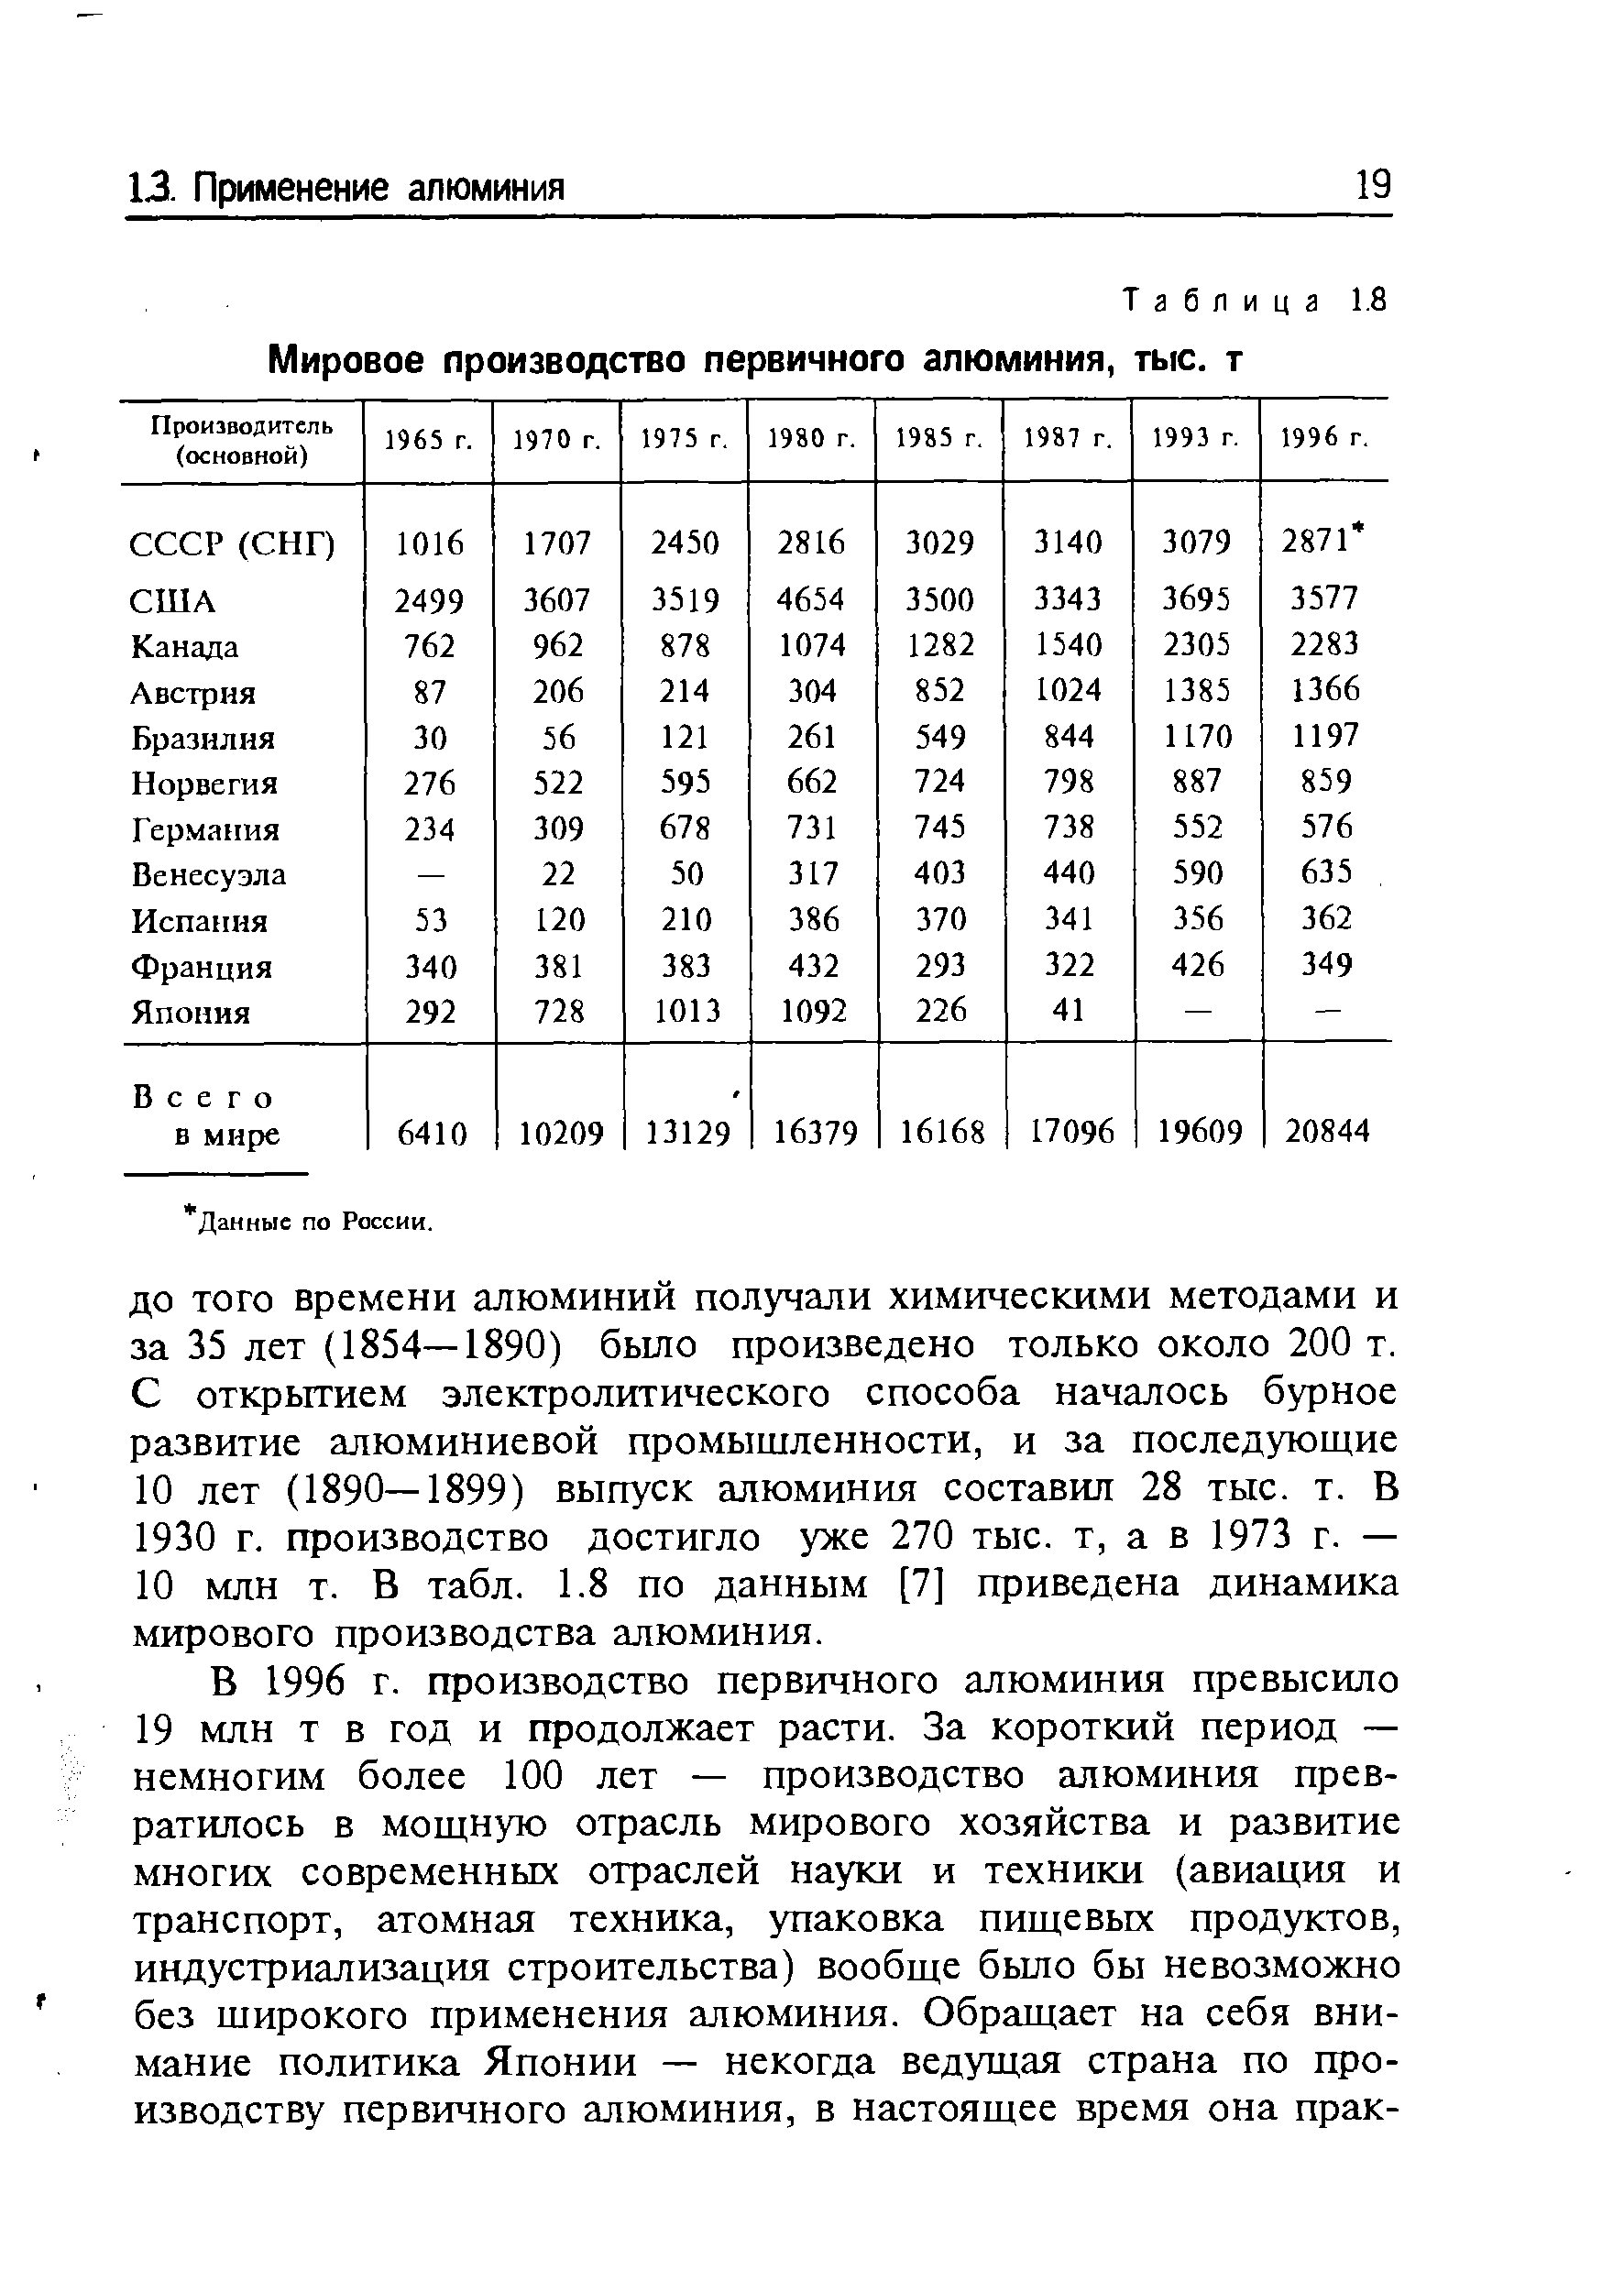 Таблица 1.8 Мировое производство первичного алюминия, тыс. т
